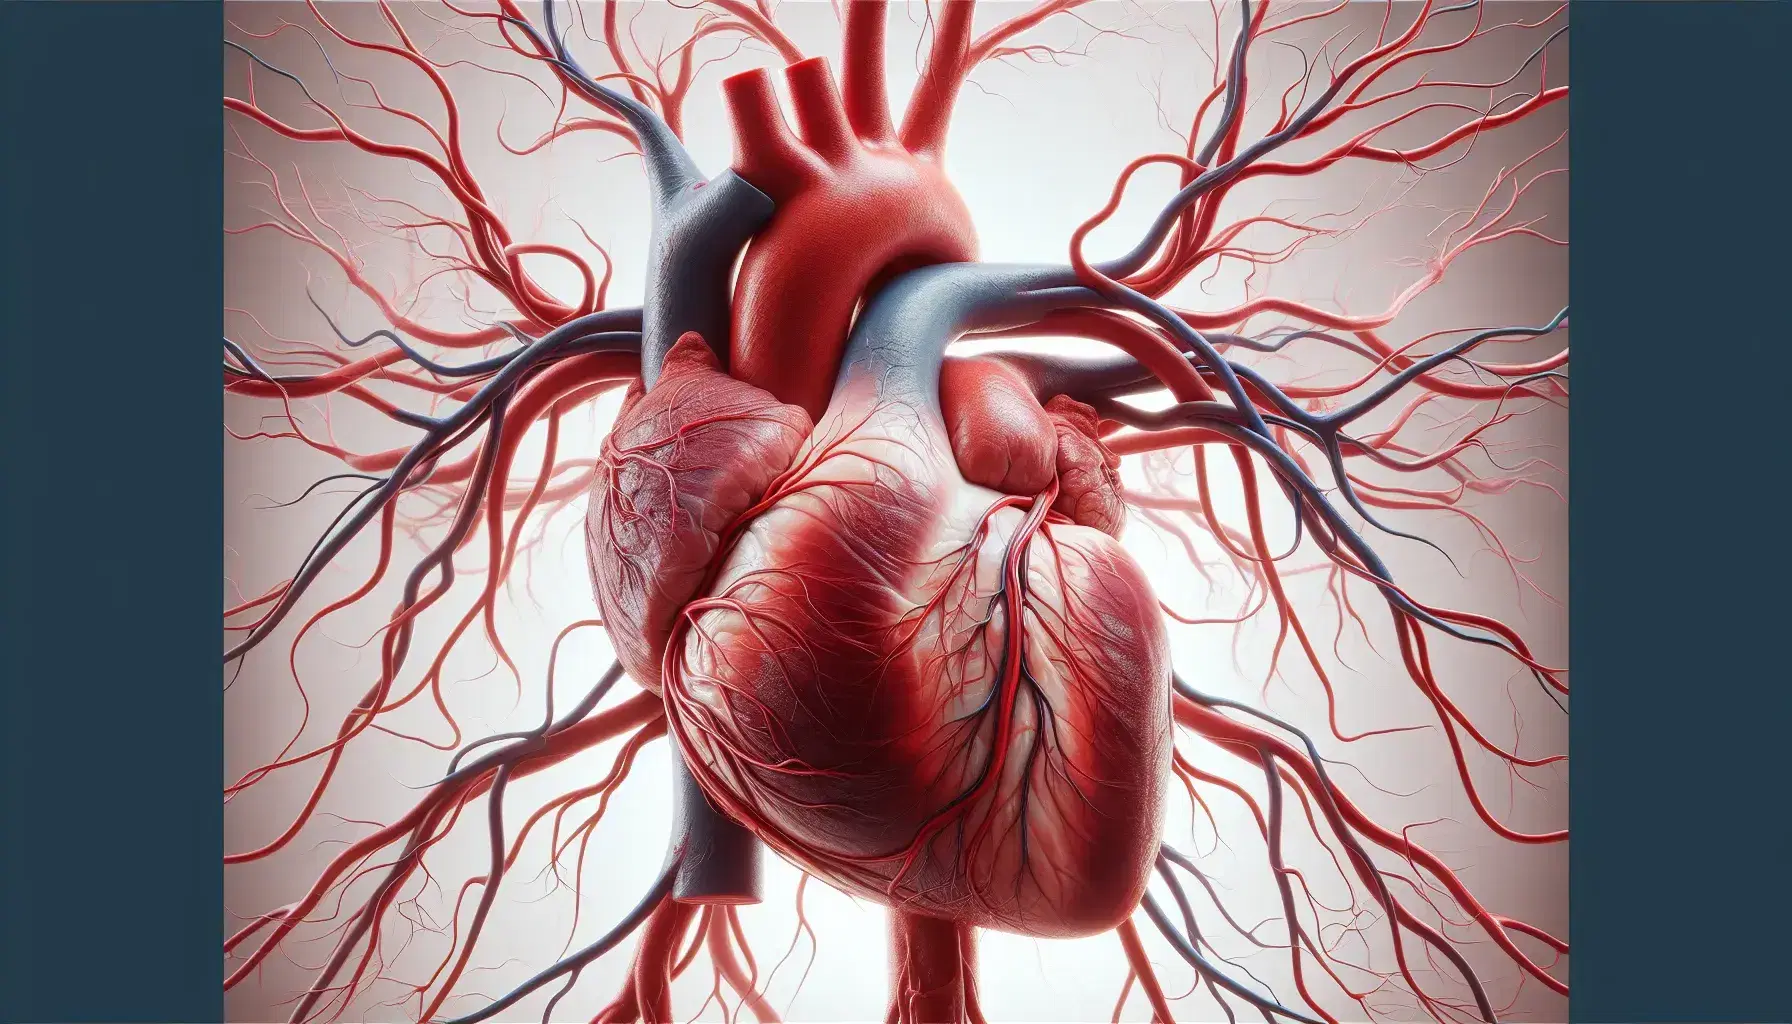 Corazón humano realista con red de arterias rojas y venas azules detalladas, destacando la anatomía cardiovascular sin elementos distractores.